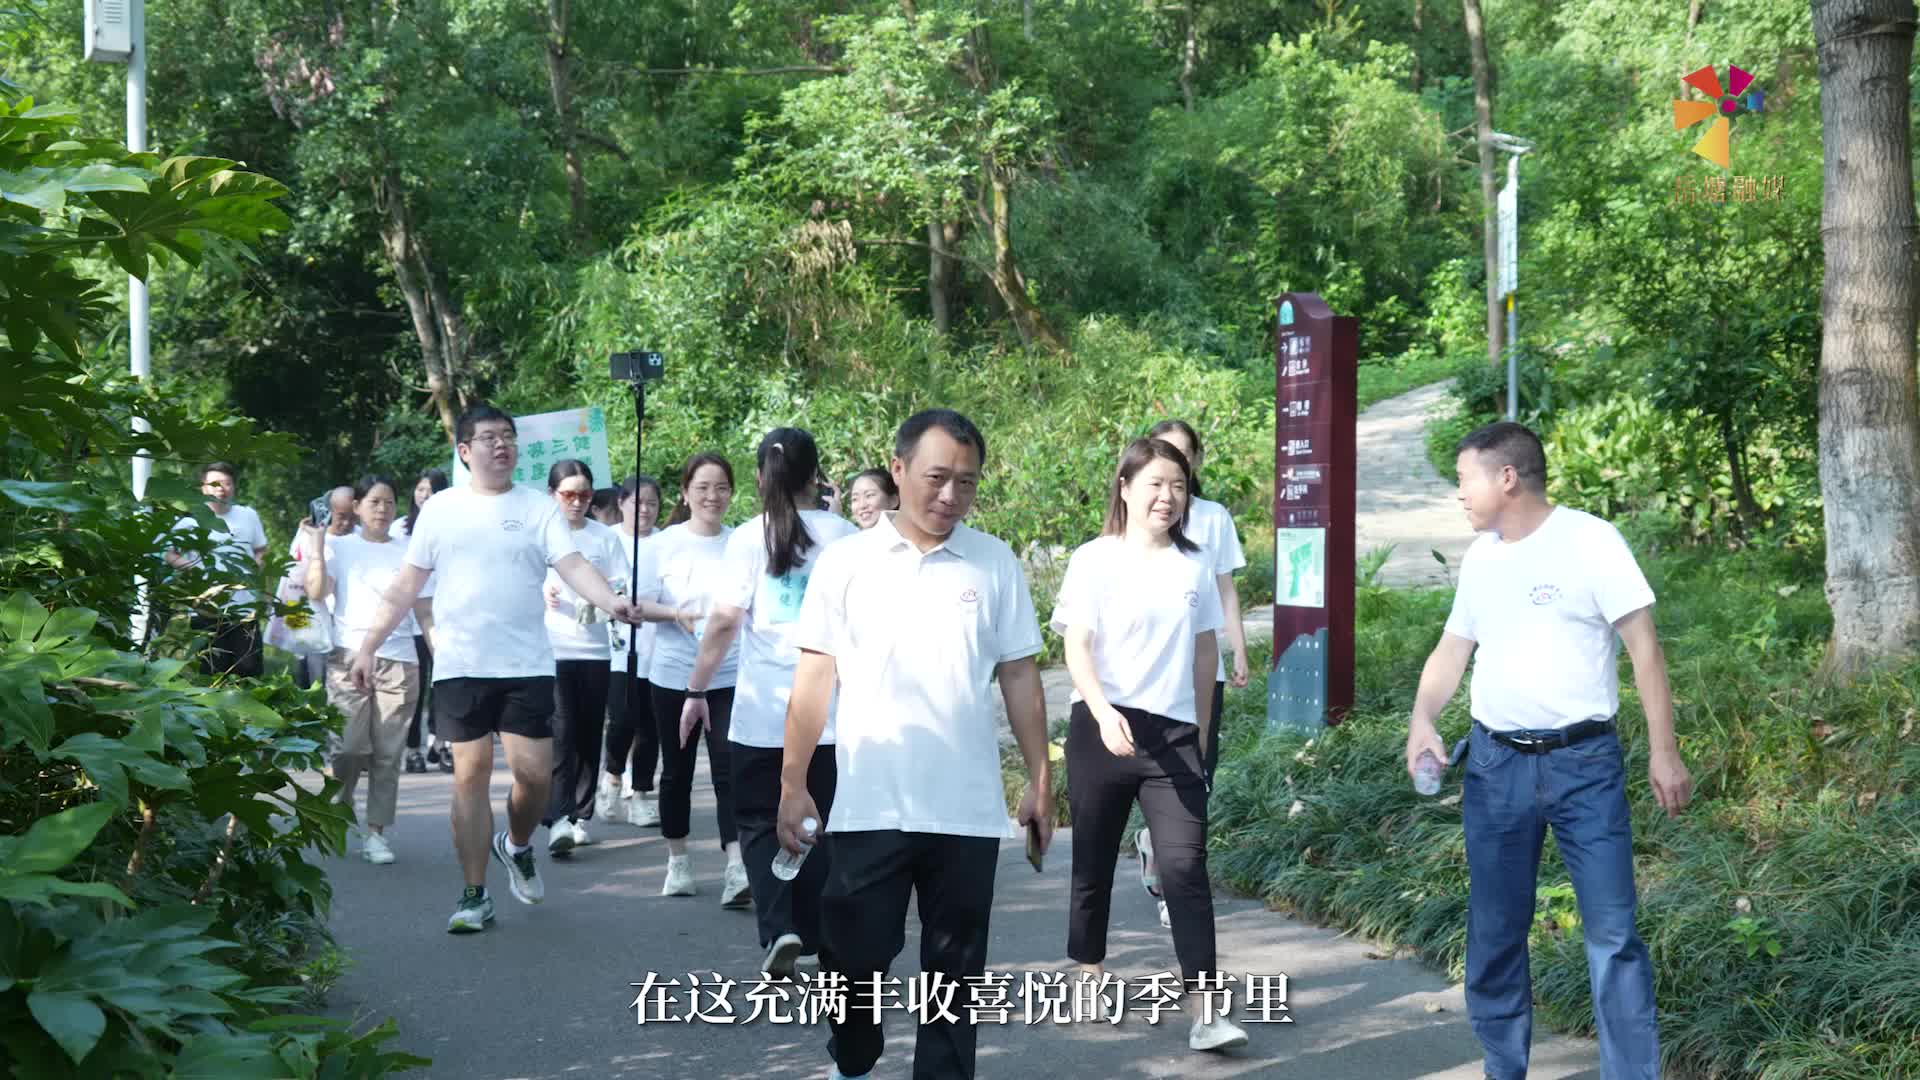 岳塘区疾控中心举行庆祝第六个“中国医师节”暨“清廉疾控”建设活动